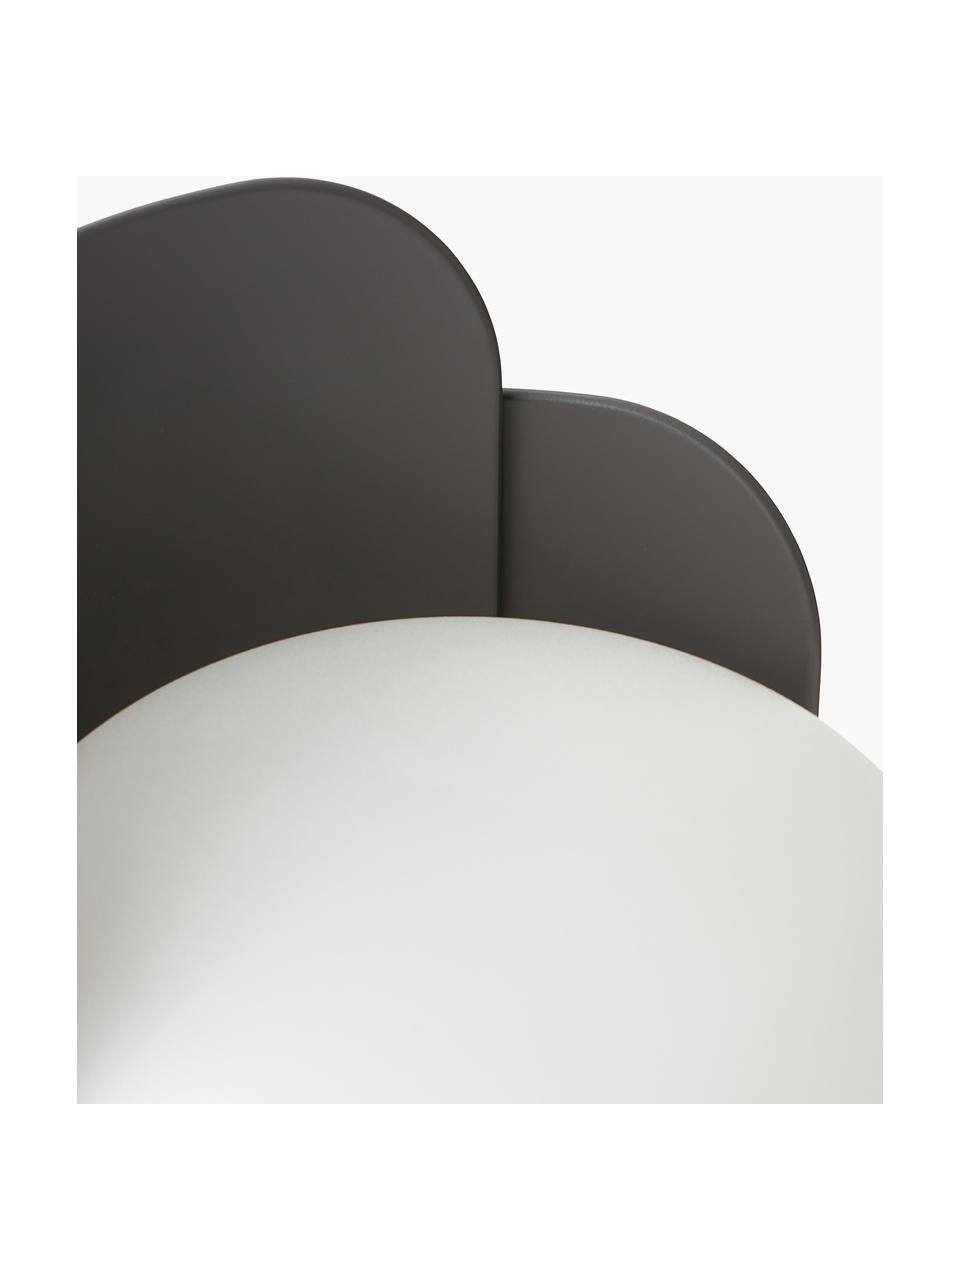 Malá stolní lampa Blom, ručně vyrobená, Bílá, antracitová, Ø 15 cm, V 24 cm